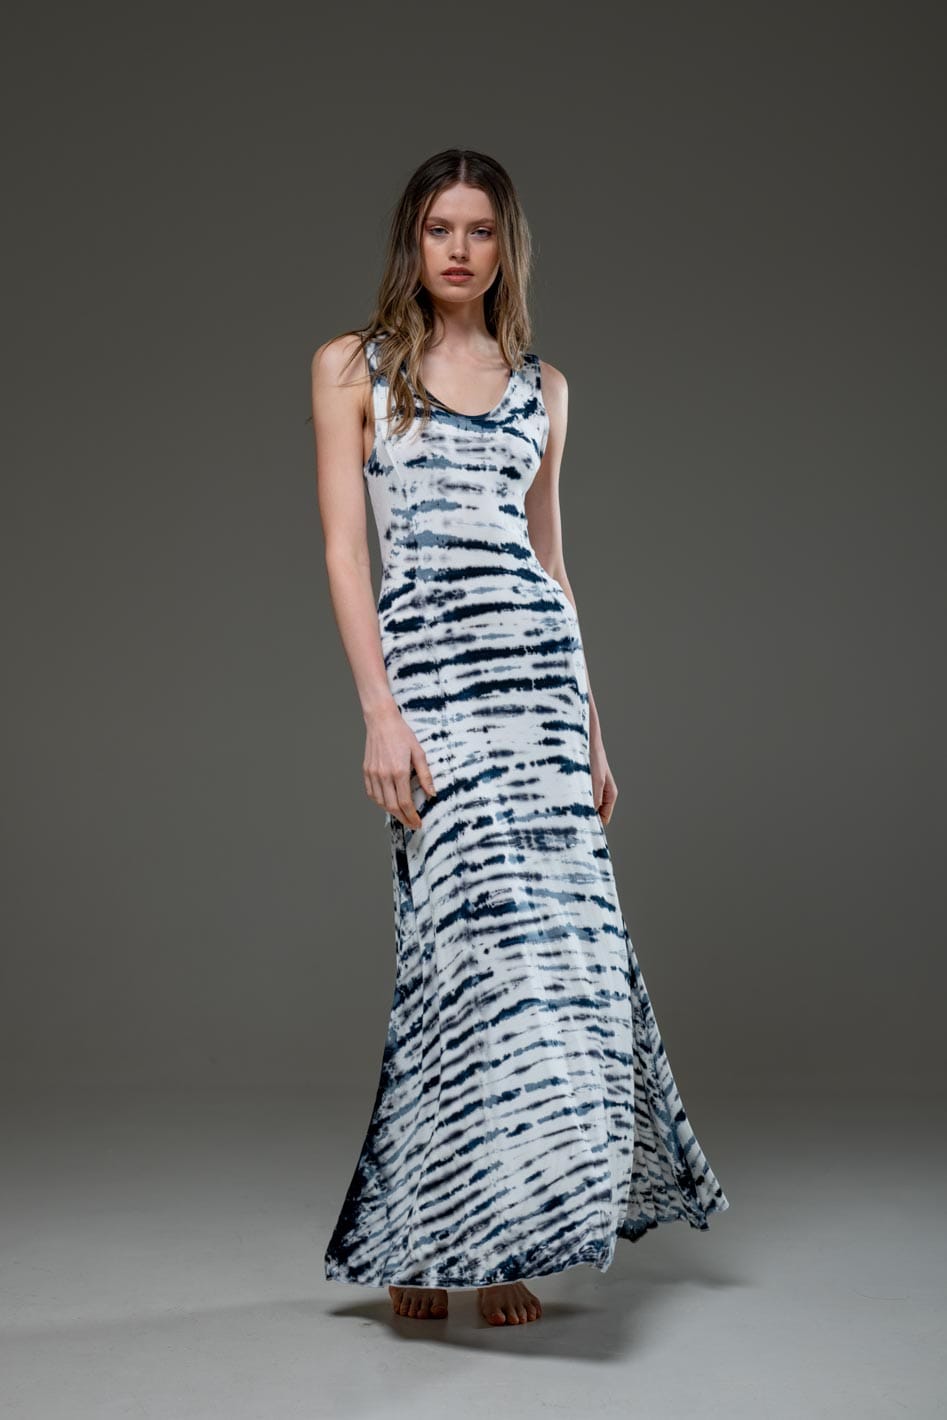 White Stripe Tie Dye Jersey Elastic Fabric Low Back Scoop Neckline A Line Long Dress